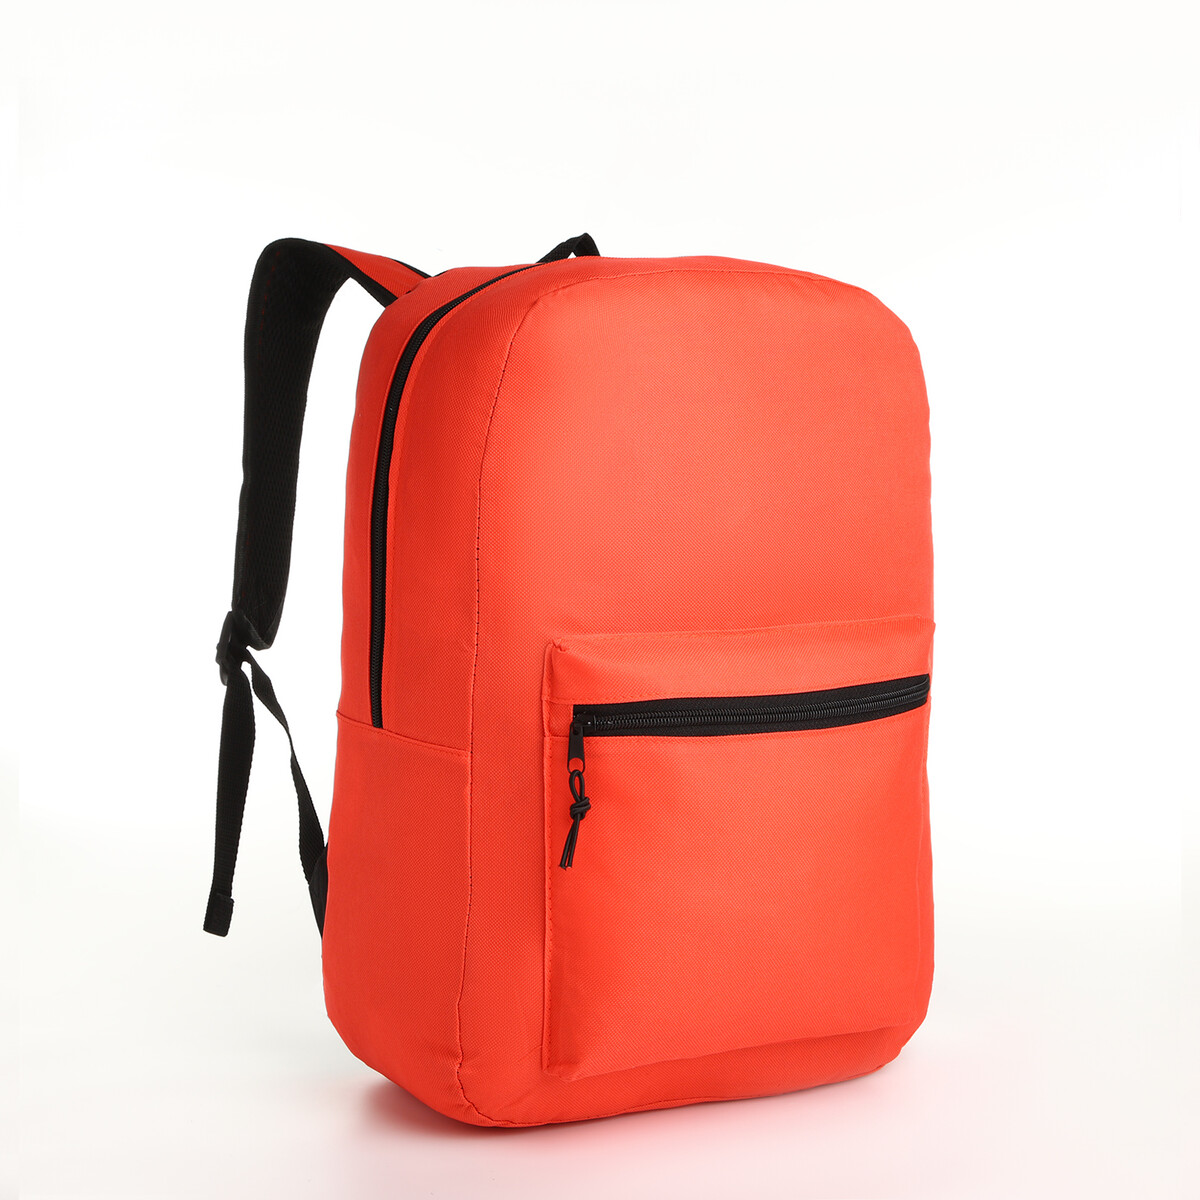 Рюкзак молодежный на молнии, наружный карман, цвет красный рюкзак wenger next ryde 611991 16 красный антрацит 26 л